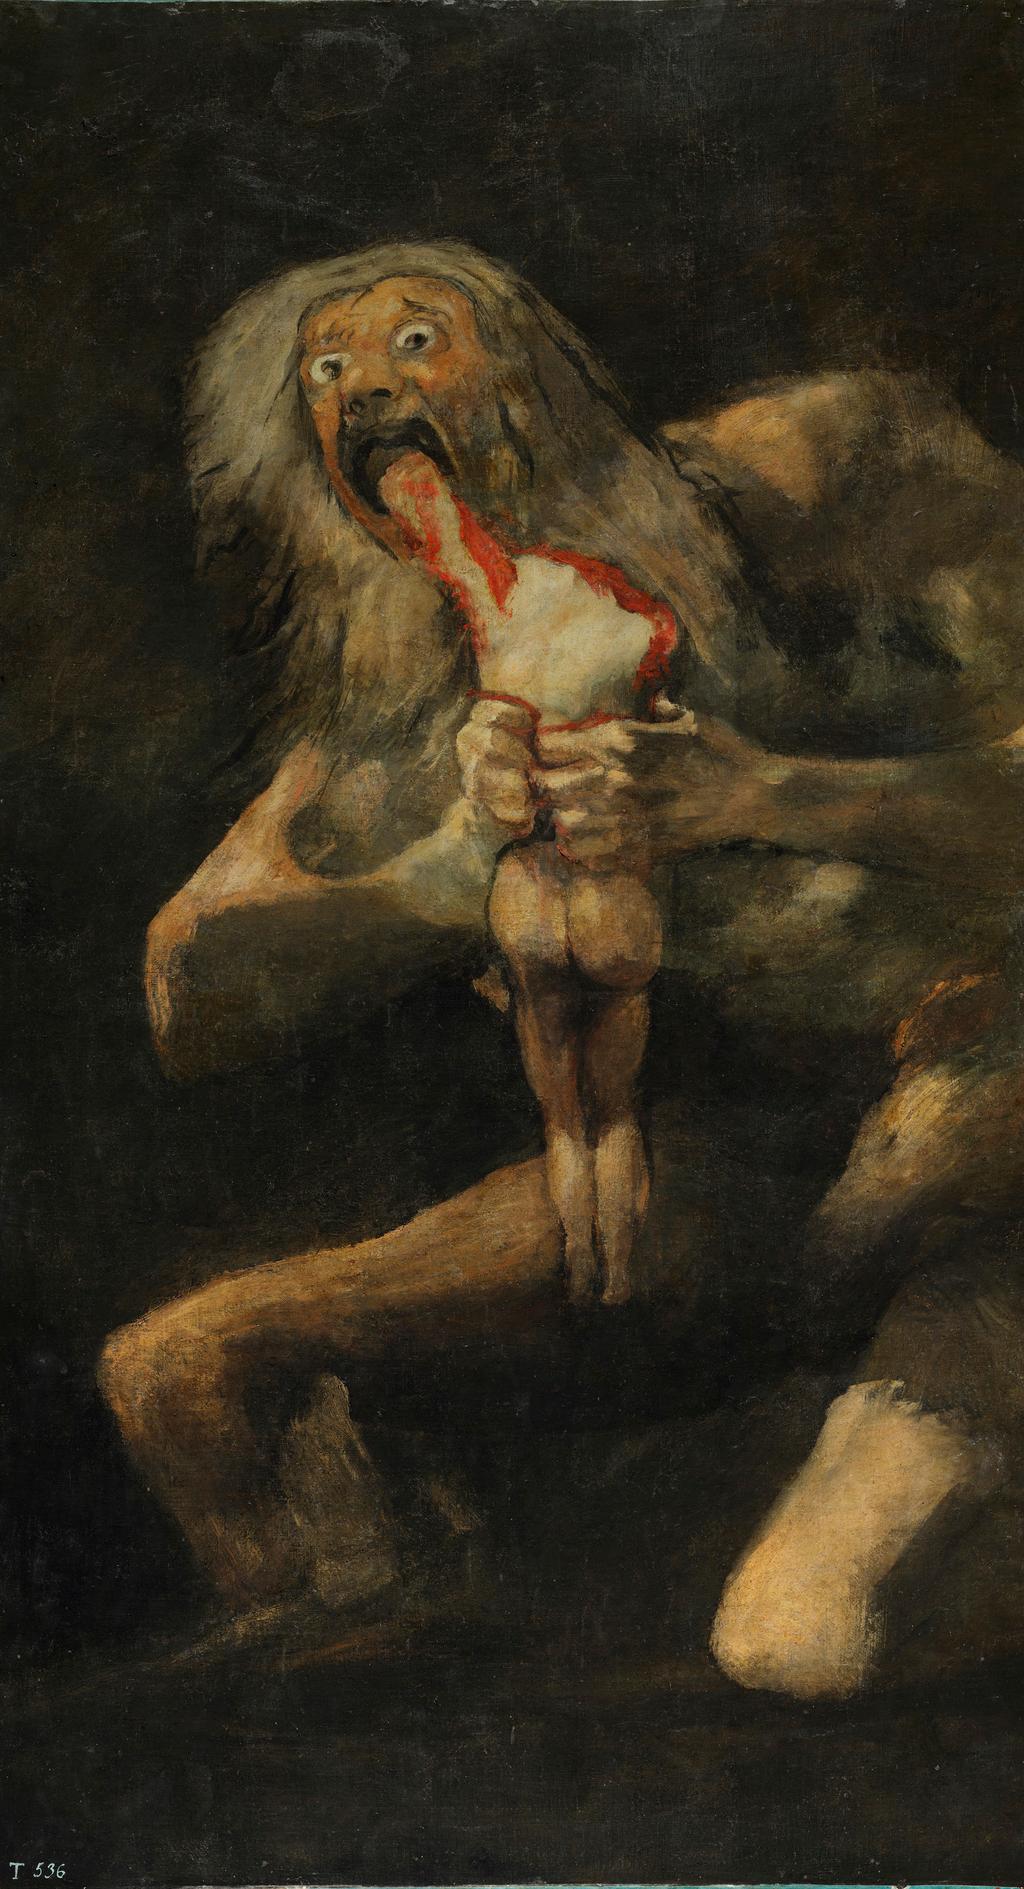 Pinturas negras: Saturno devorando a sus hijos y El perro semihundido Tras la guerra, Goya tuvo problemas con Fernando